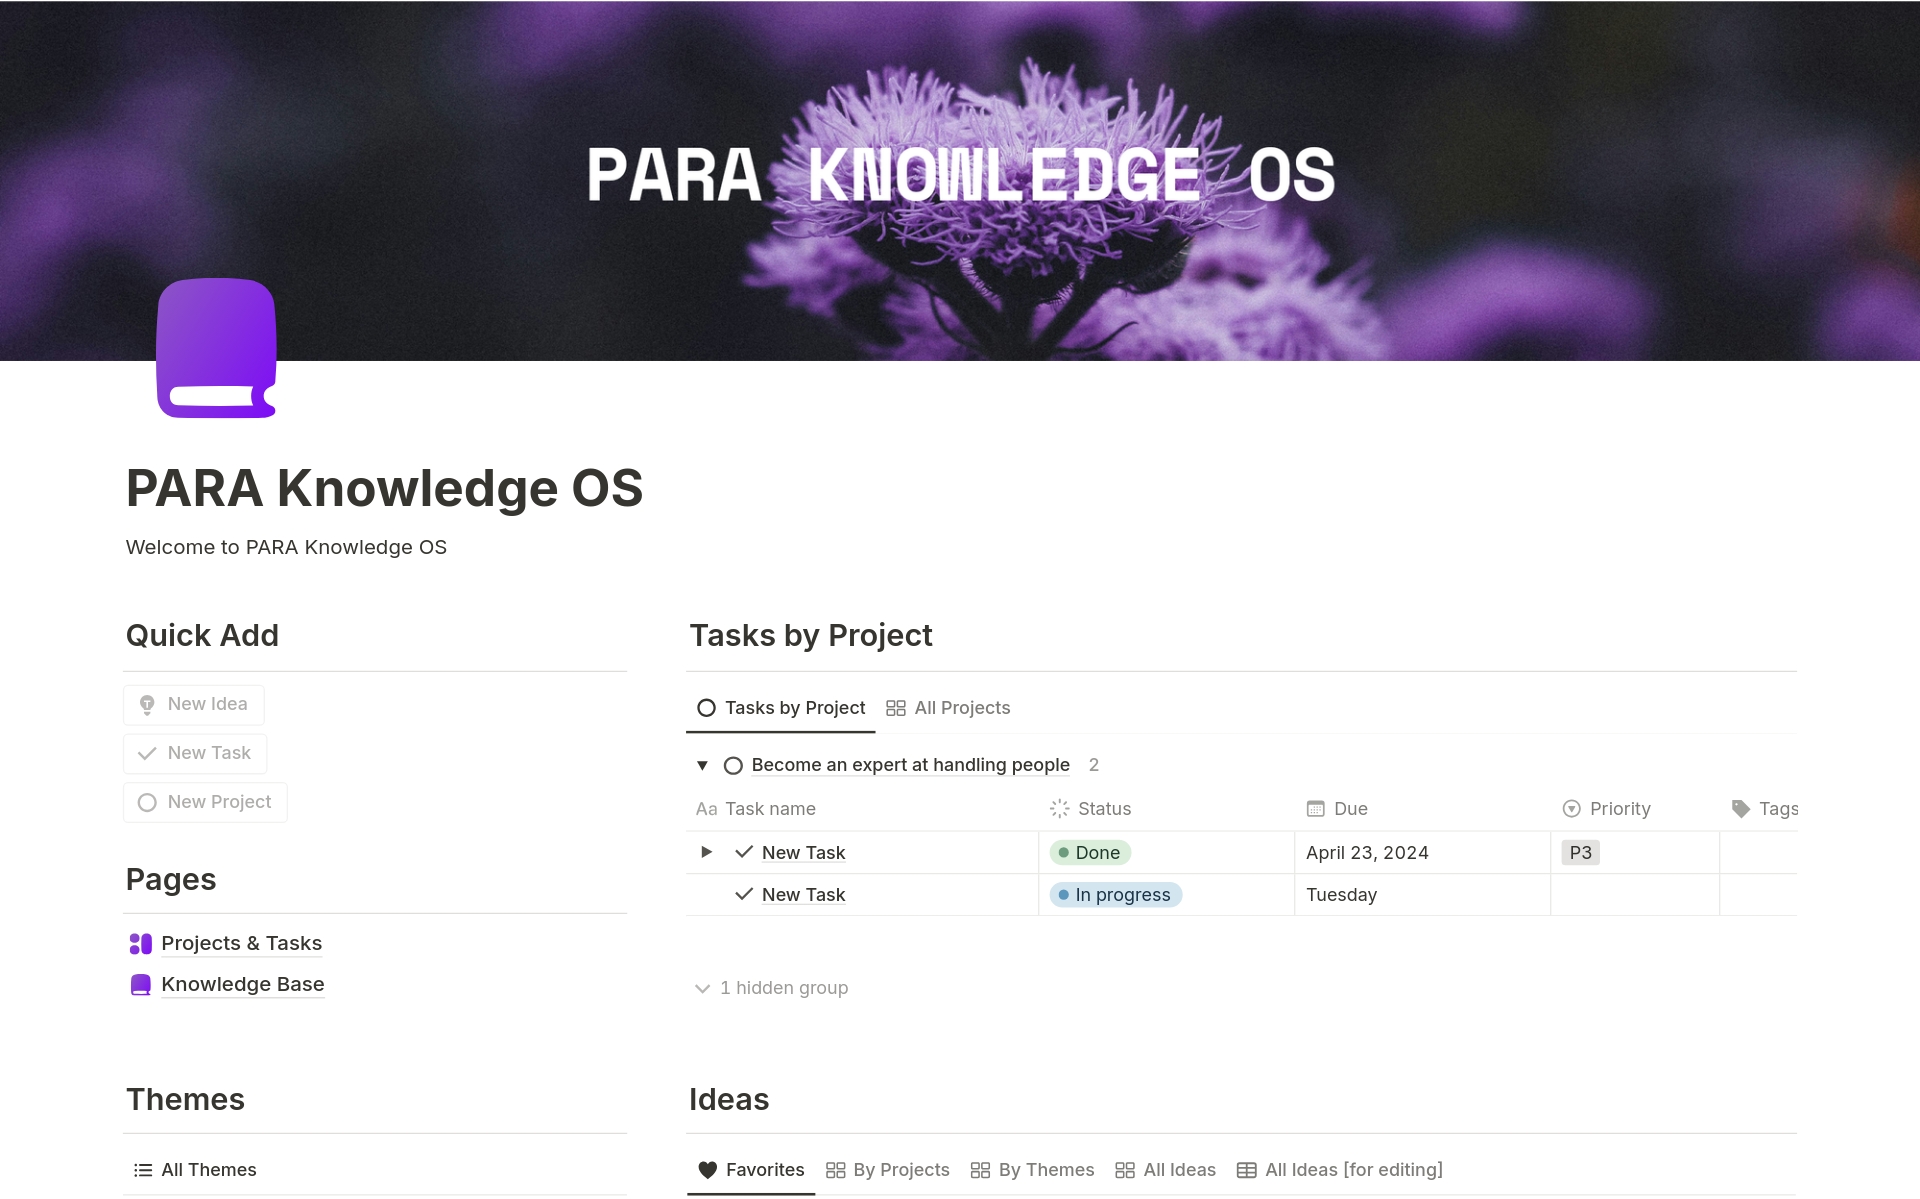 Vista previa de una plantilla para PARA Knowledge OS